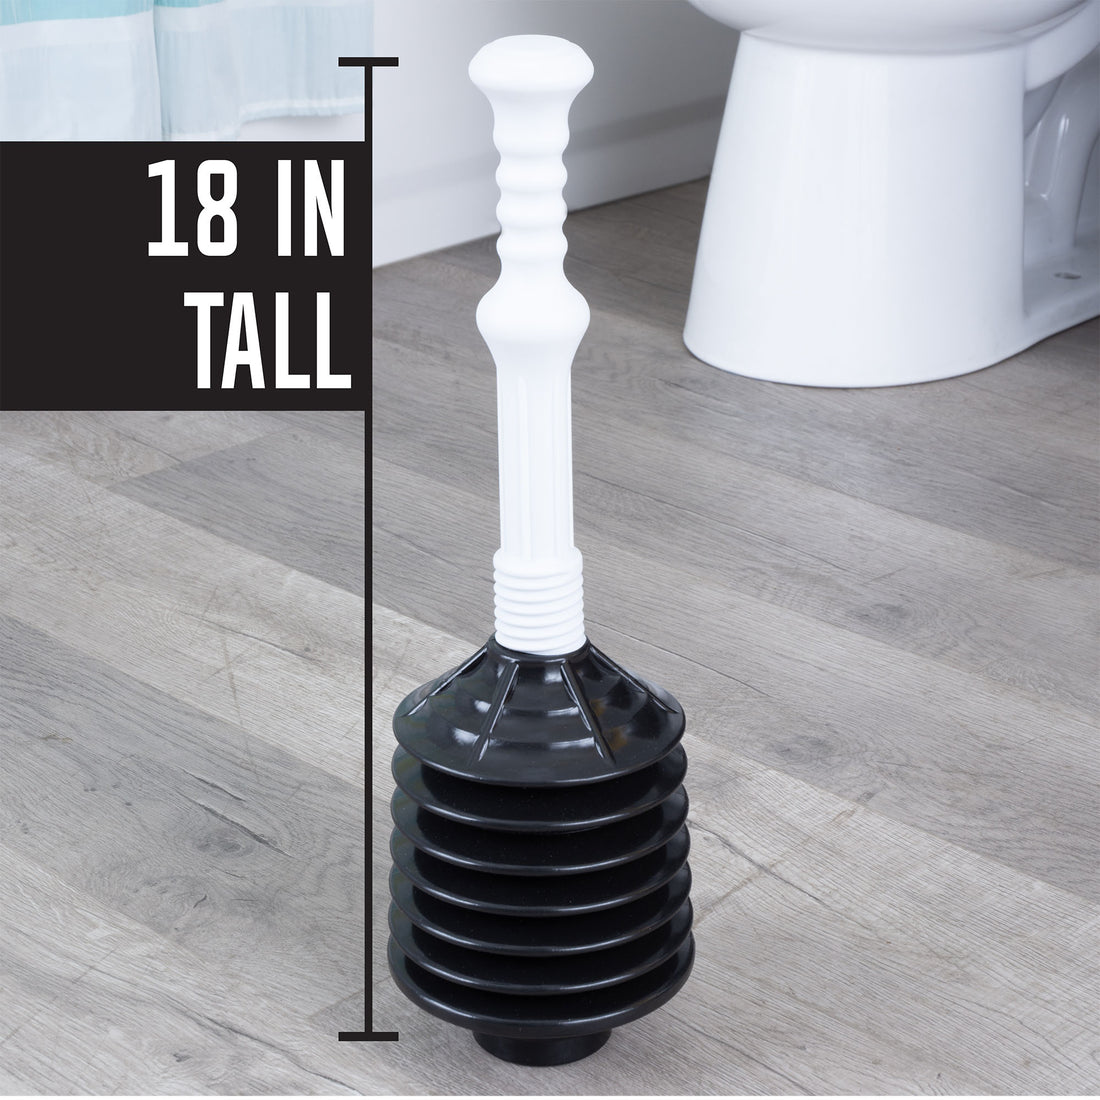 Bellows Accordion Toilet Plunger (Black and White) - Utility sinks vanites Tehila